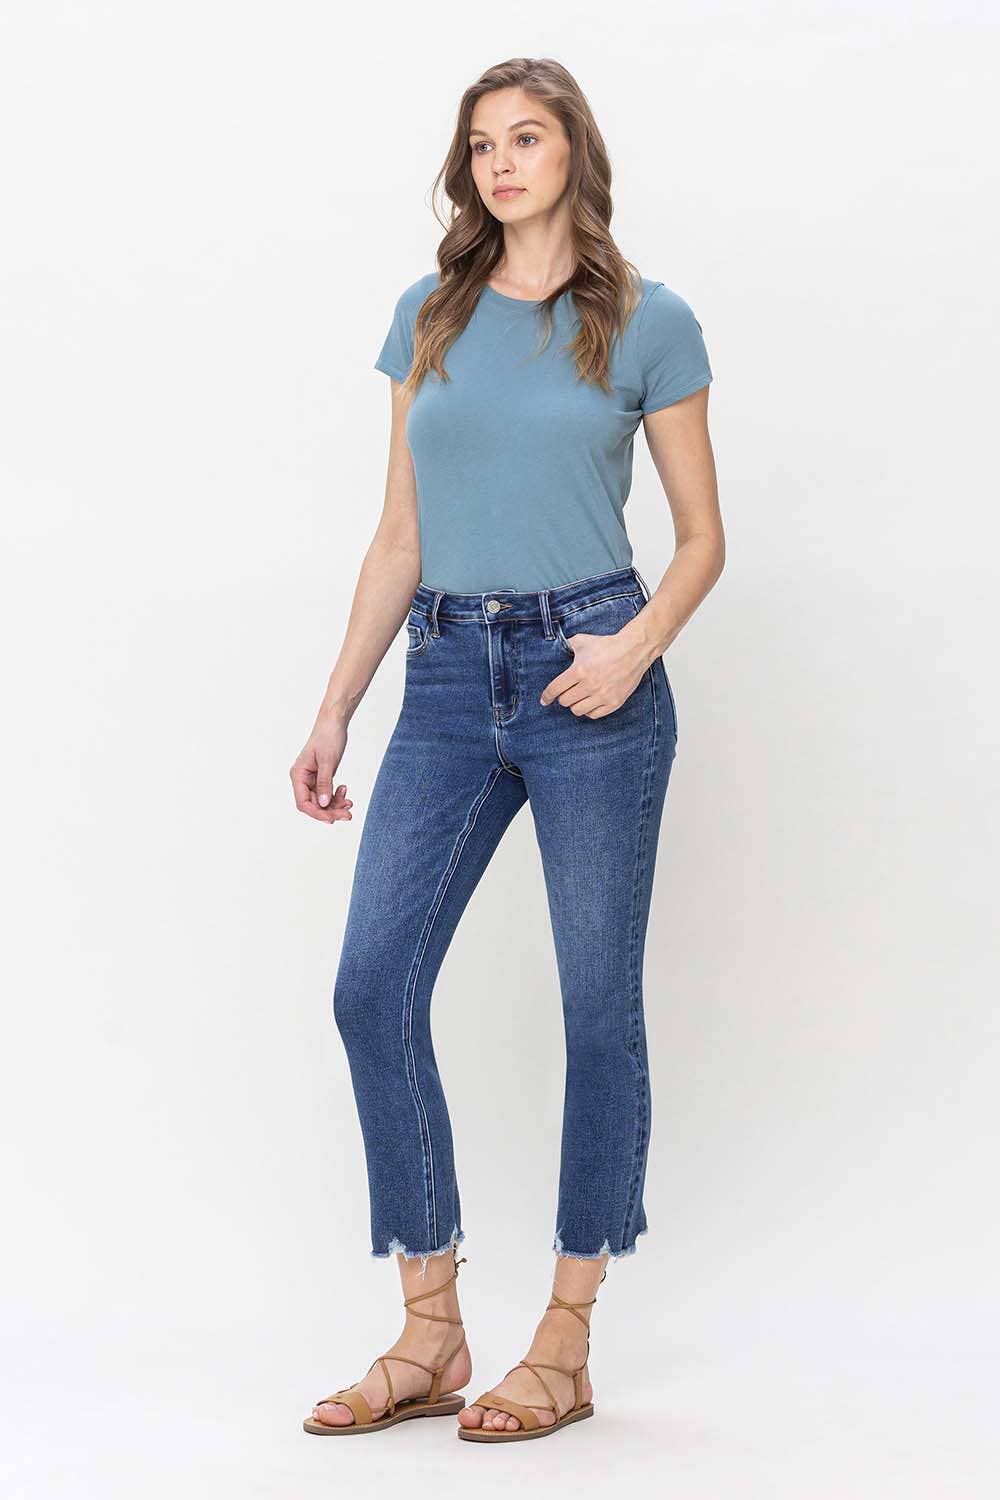 Leona Glitz Super High Rise Straight Jeans - Vervet